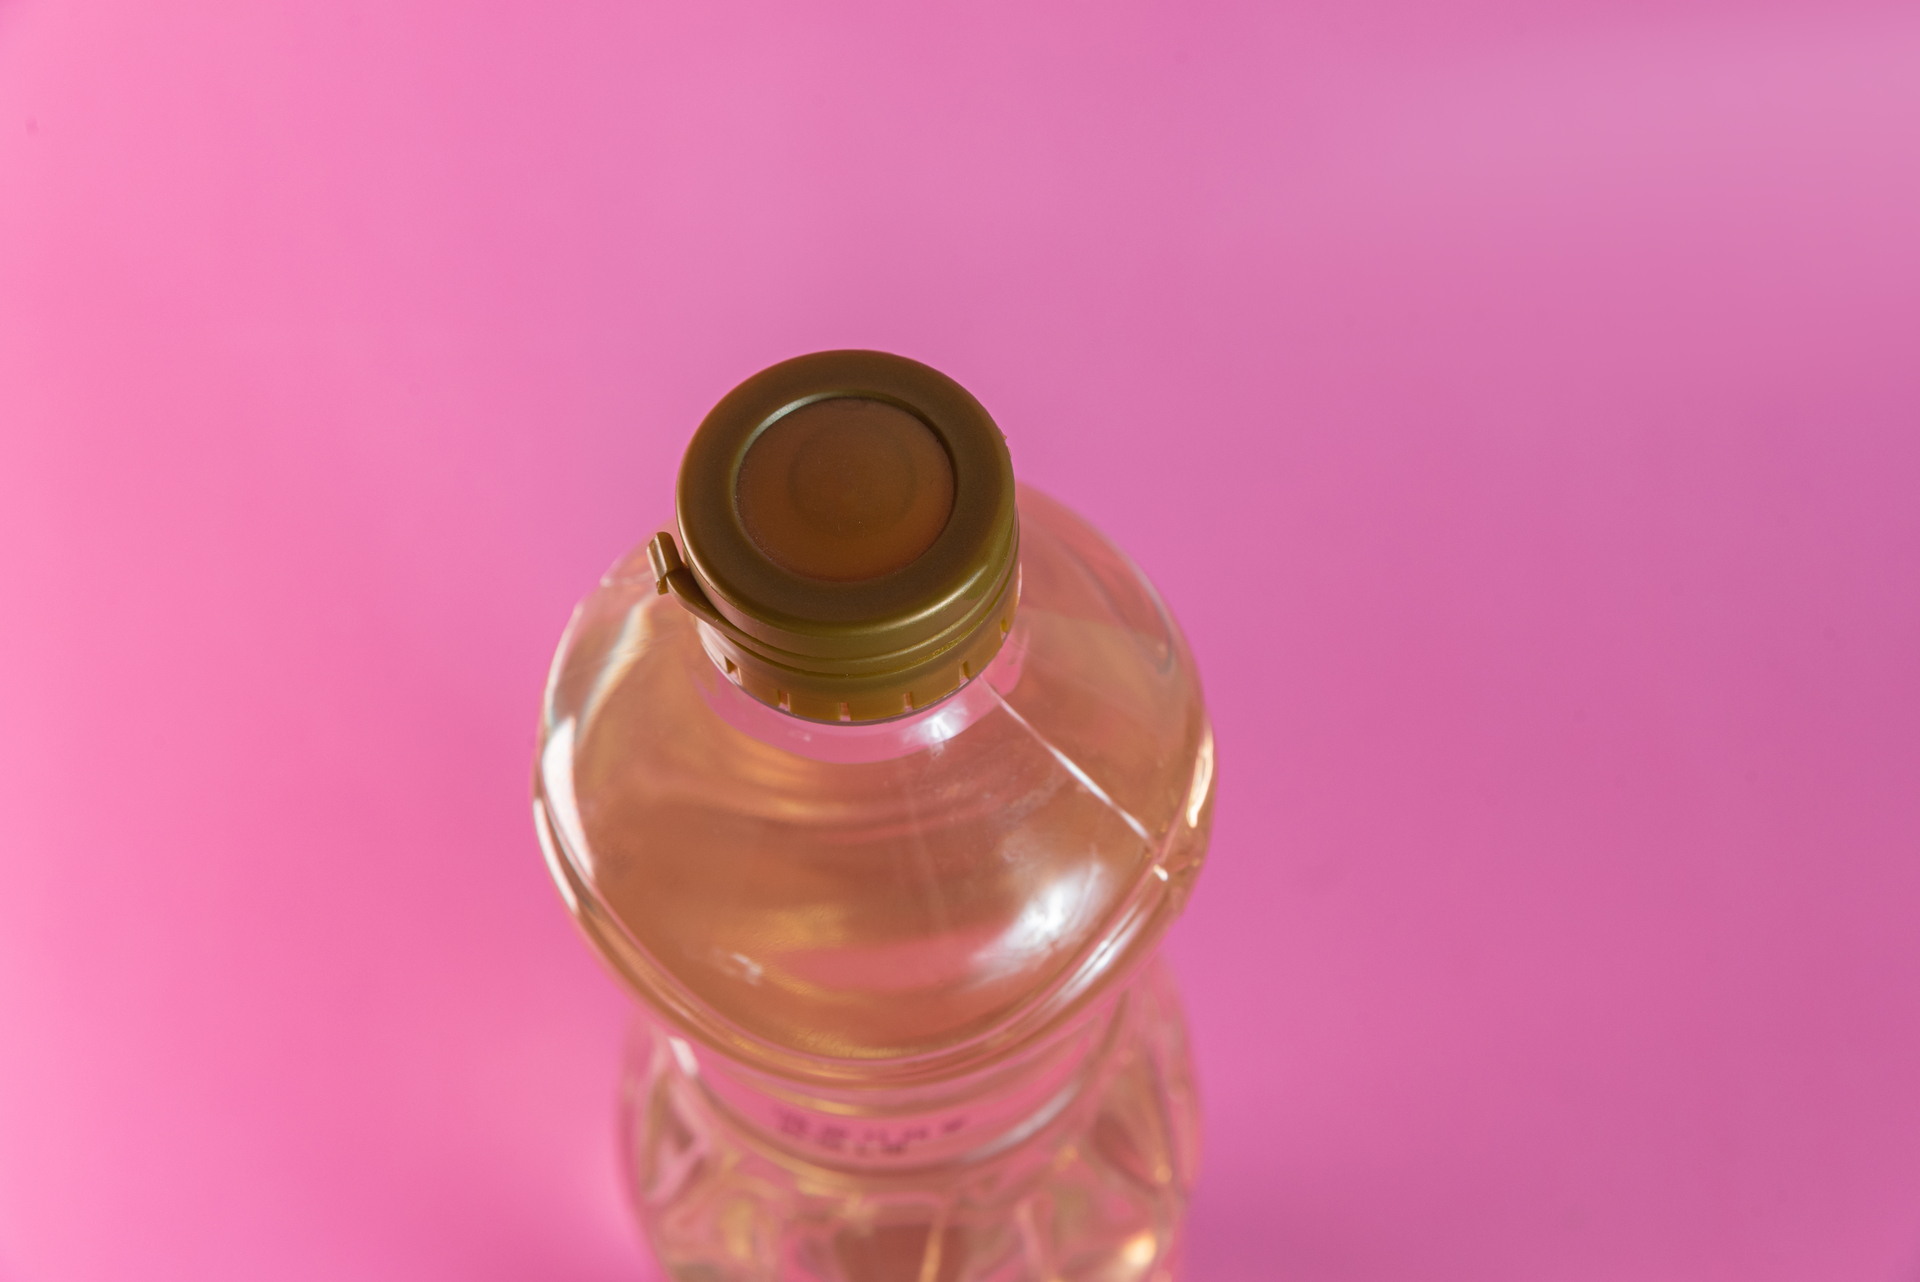 Butela z octem na różowym tle